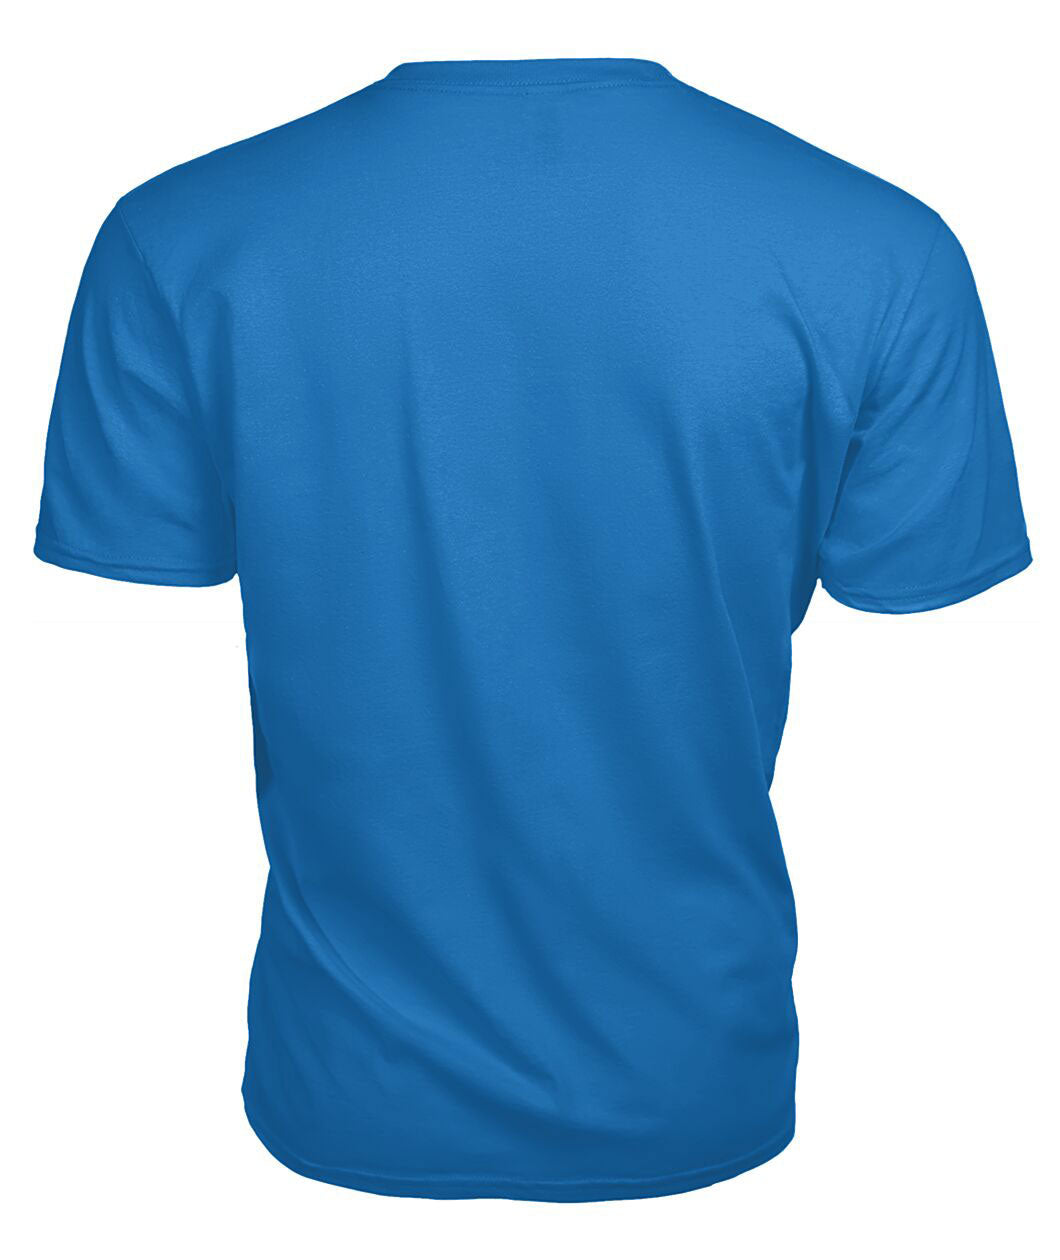 Belshes Tartan Crest 2D T-shirt - Blood Runs Through My Veins Style